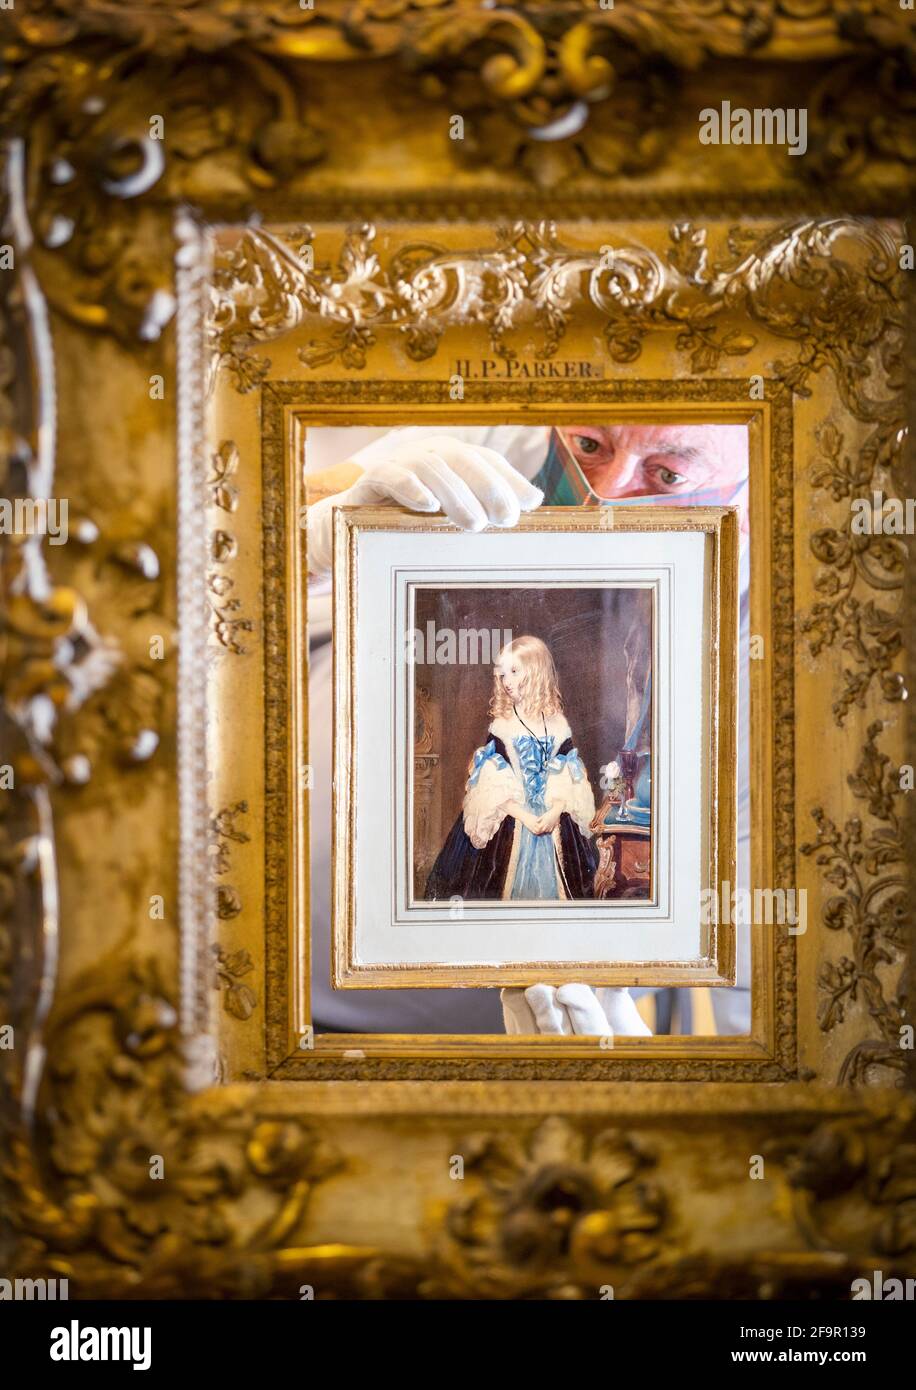 Danny McIlwraith untersucht ein Aquarell von Lady Elizabeth Leveson-Gower aus dem 19. Jahrhundert des Künstlers John Bostock, das im Bonhams Edinburgh während des Dunrobin Attic Sale, einer Auktion von Hunderten von Gegenständen, die in den Dachböden und Kellern des Dunrobin Castle in Sutherland gefunden wurden, ausgestellt wird. Der Familiensitz des 25. Earl of Sutherland. Bilddatum: Dienstag, 20. April 2021. Stockfoto